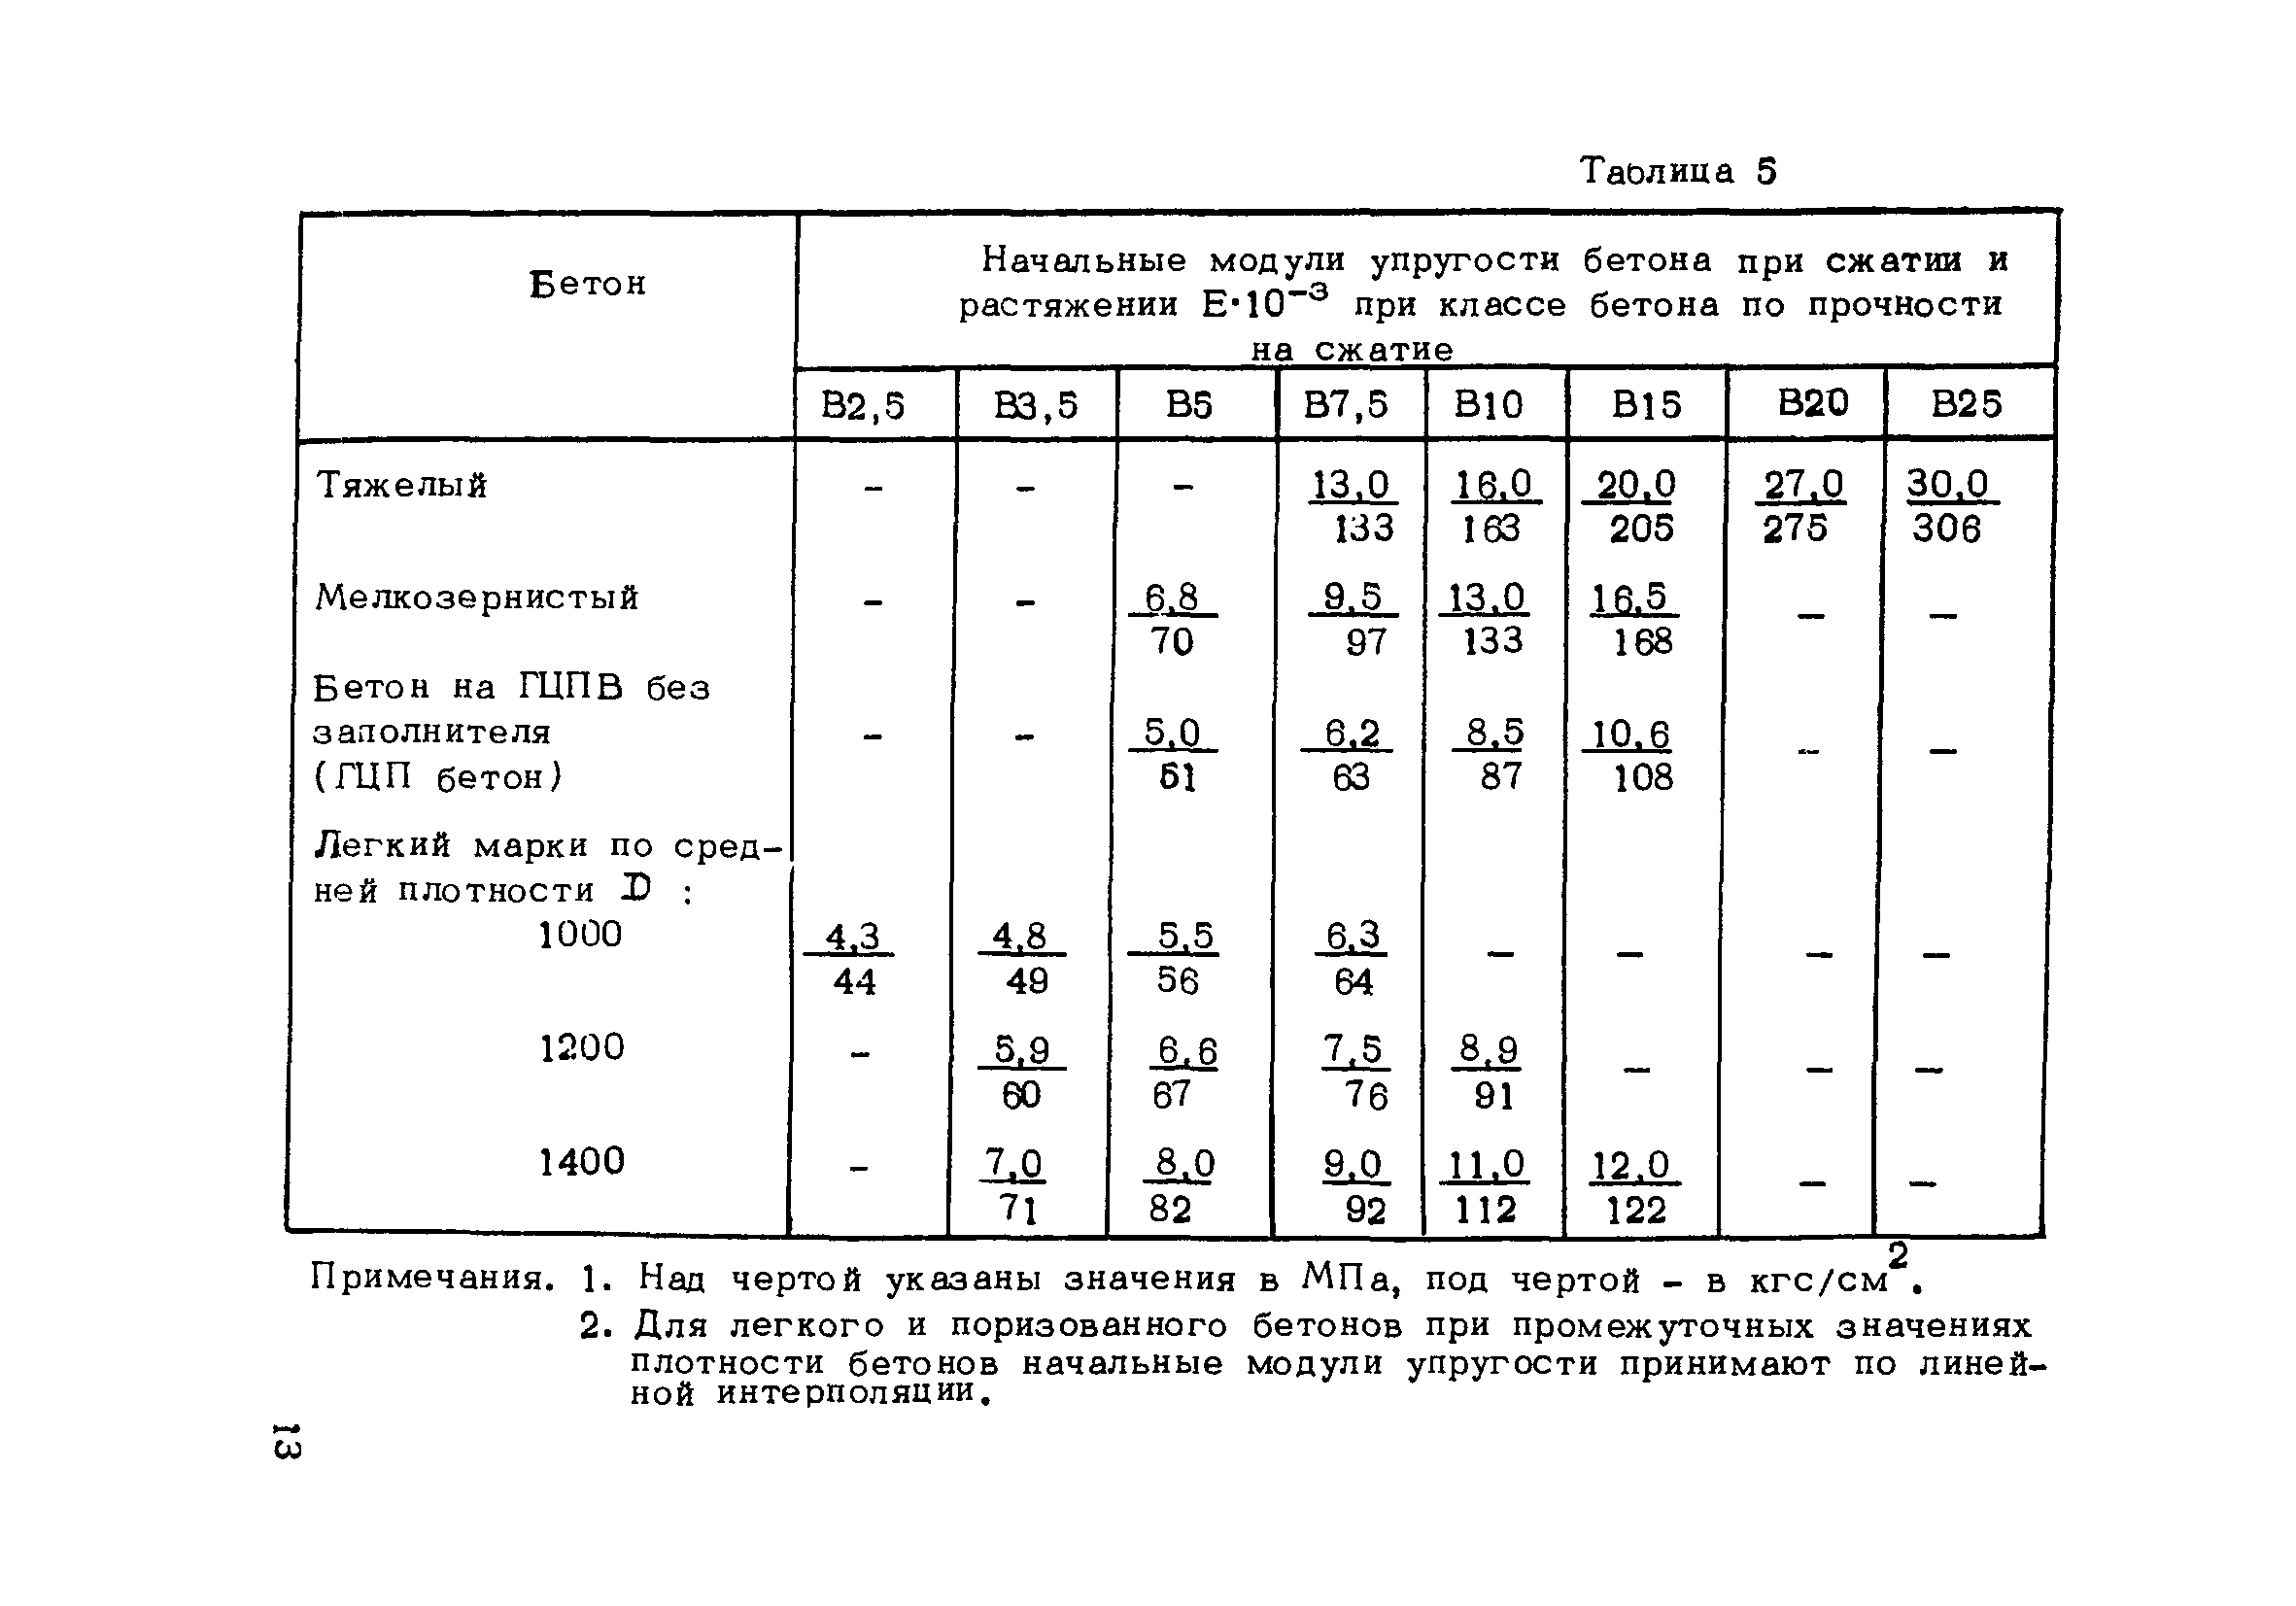 Стандарт определения и таблица модулей упругости бетона